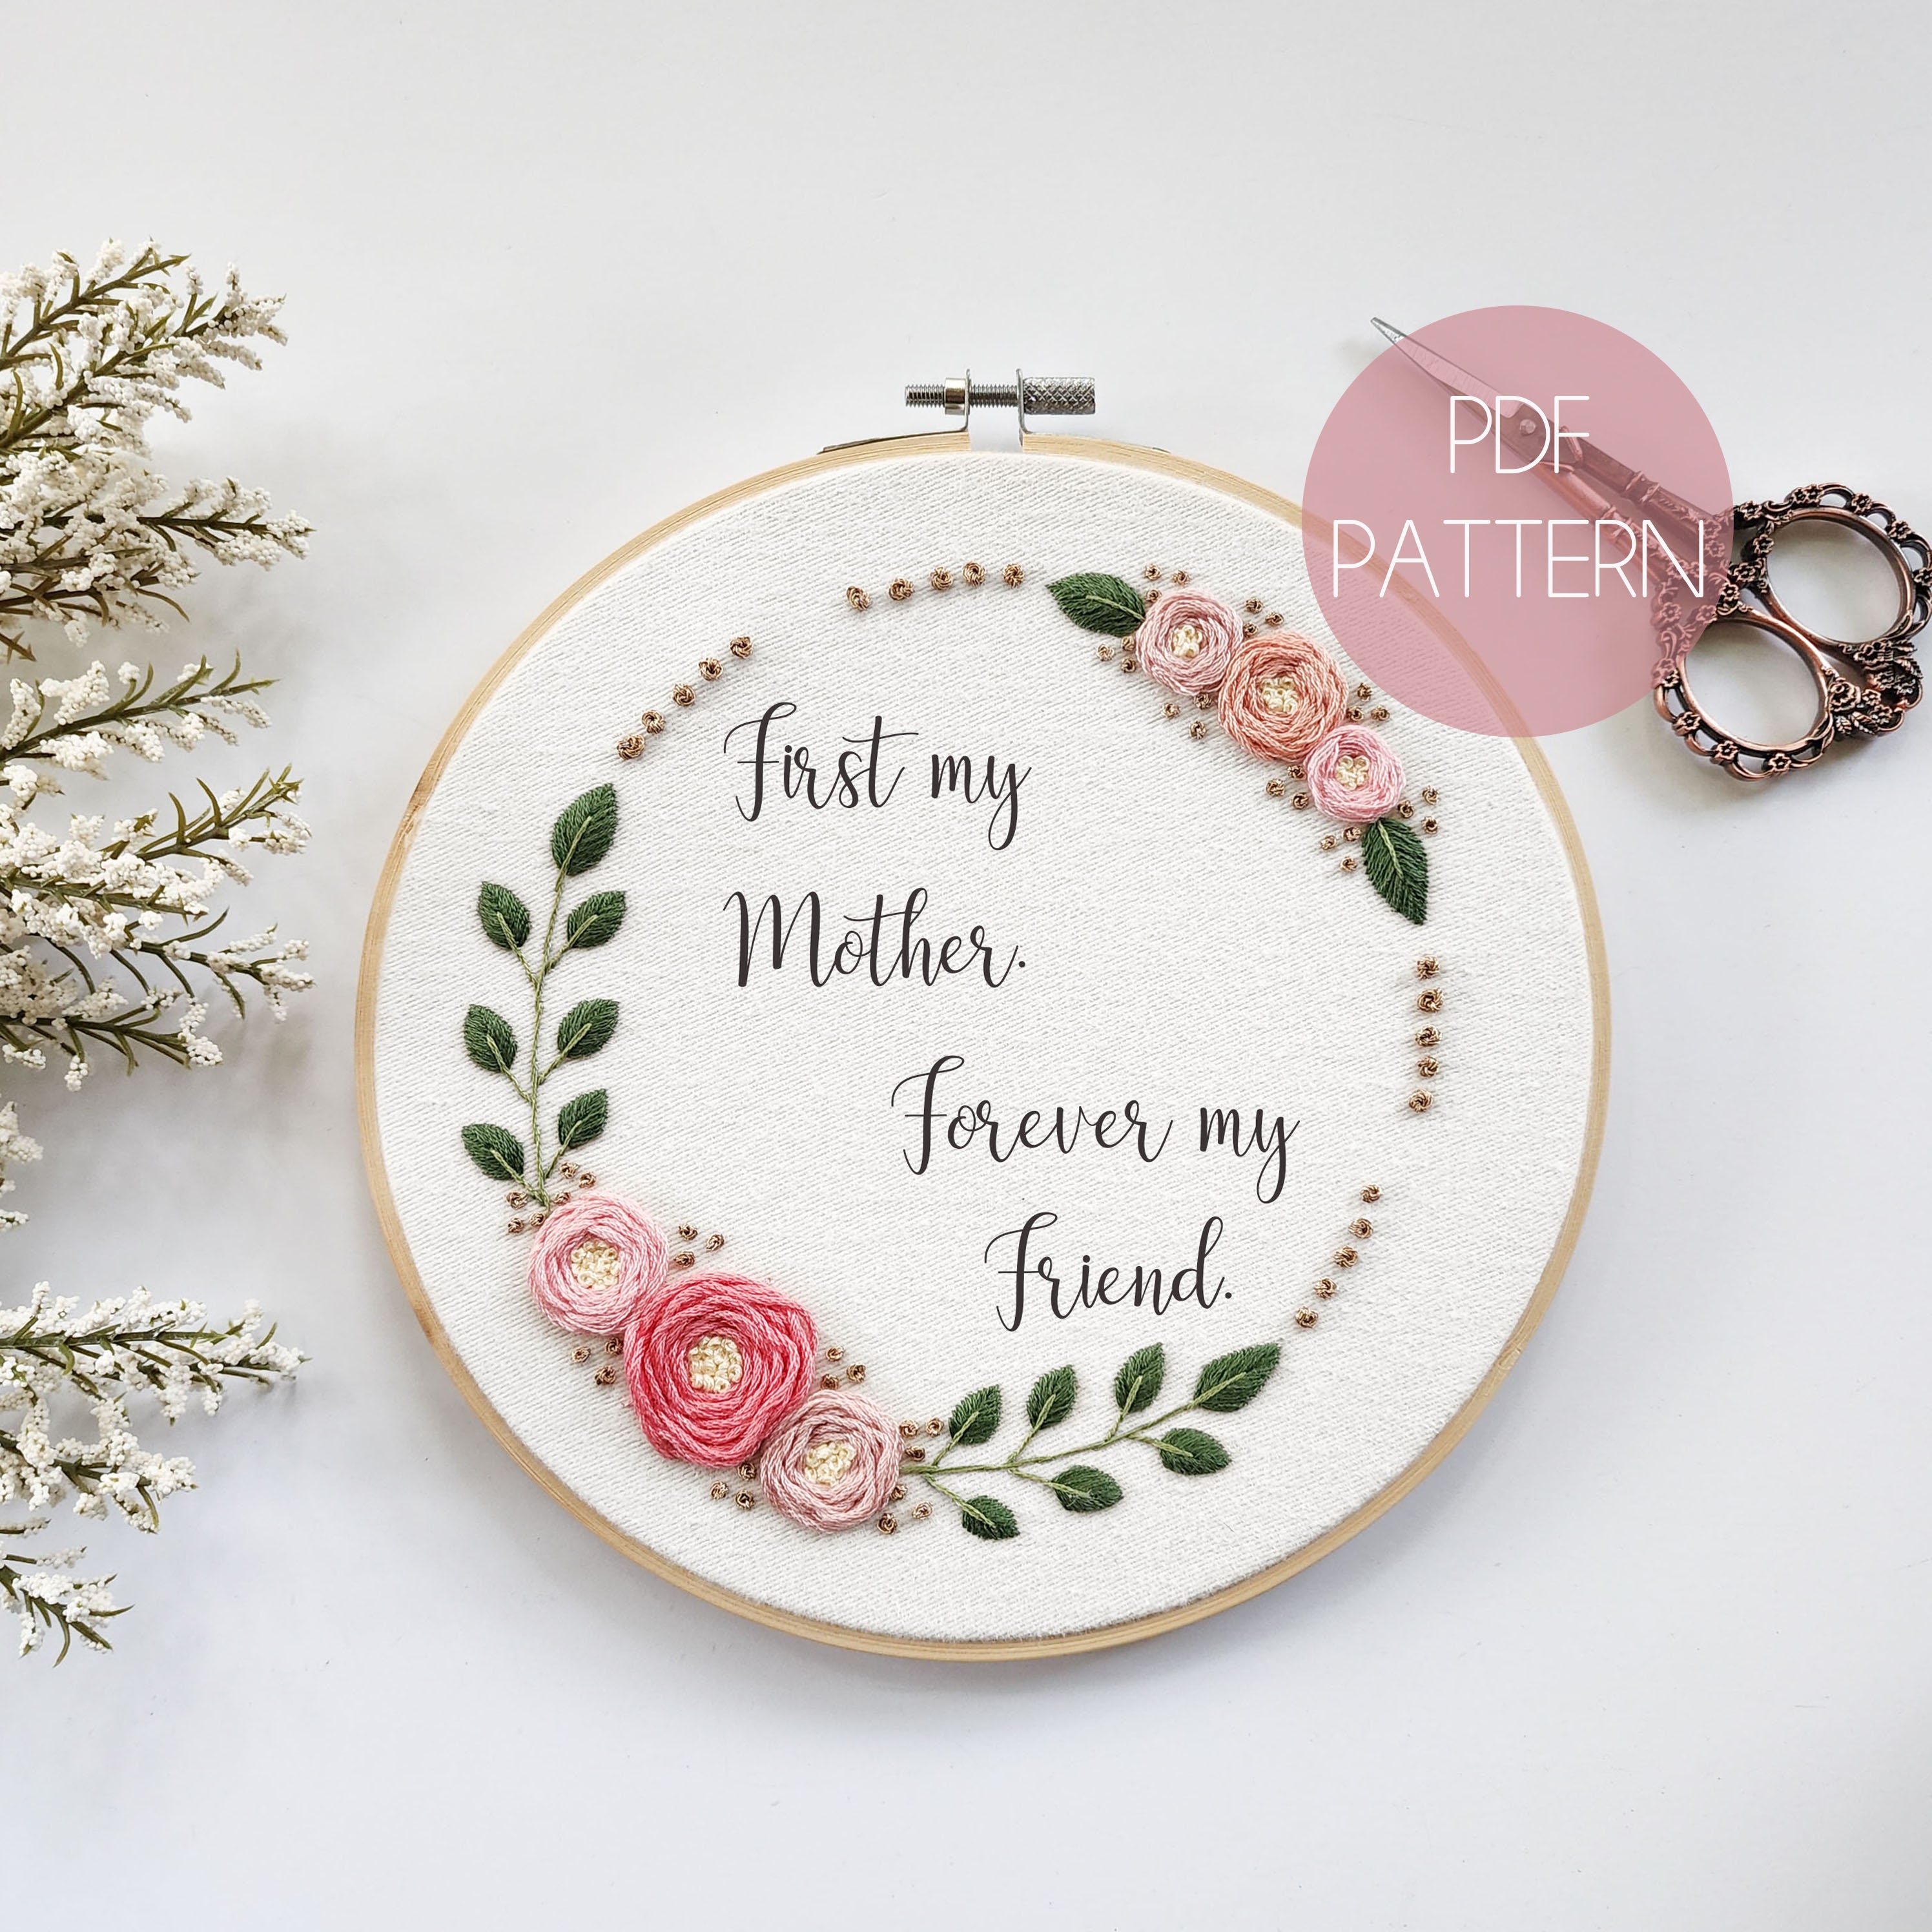 30 Stylish & Creative DIY Mother's Day Gifts - Joyful Derivatives